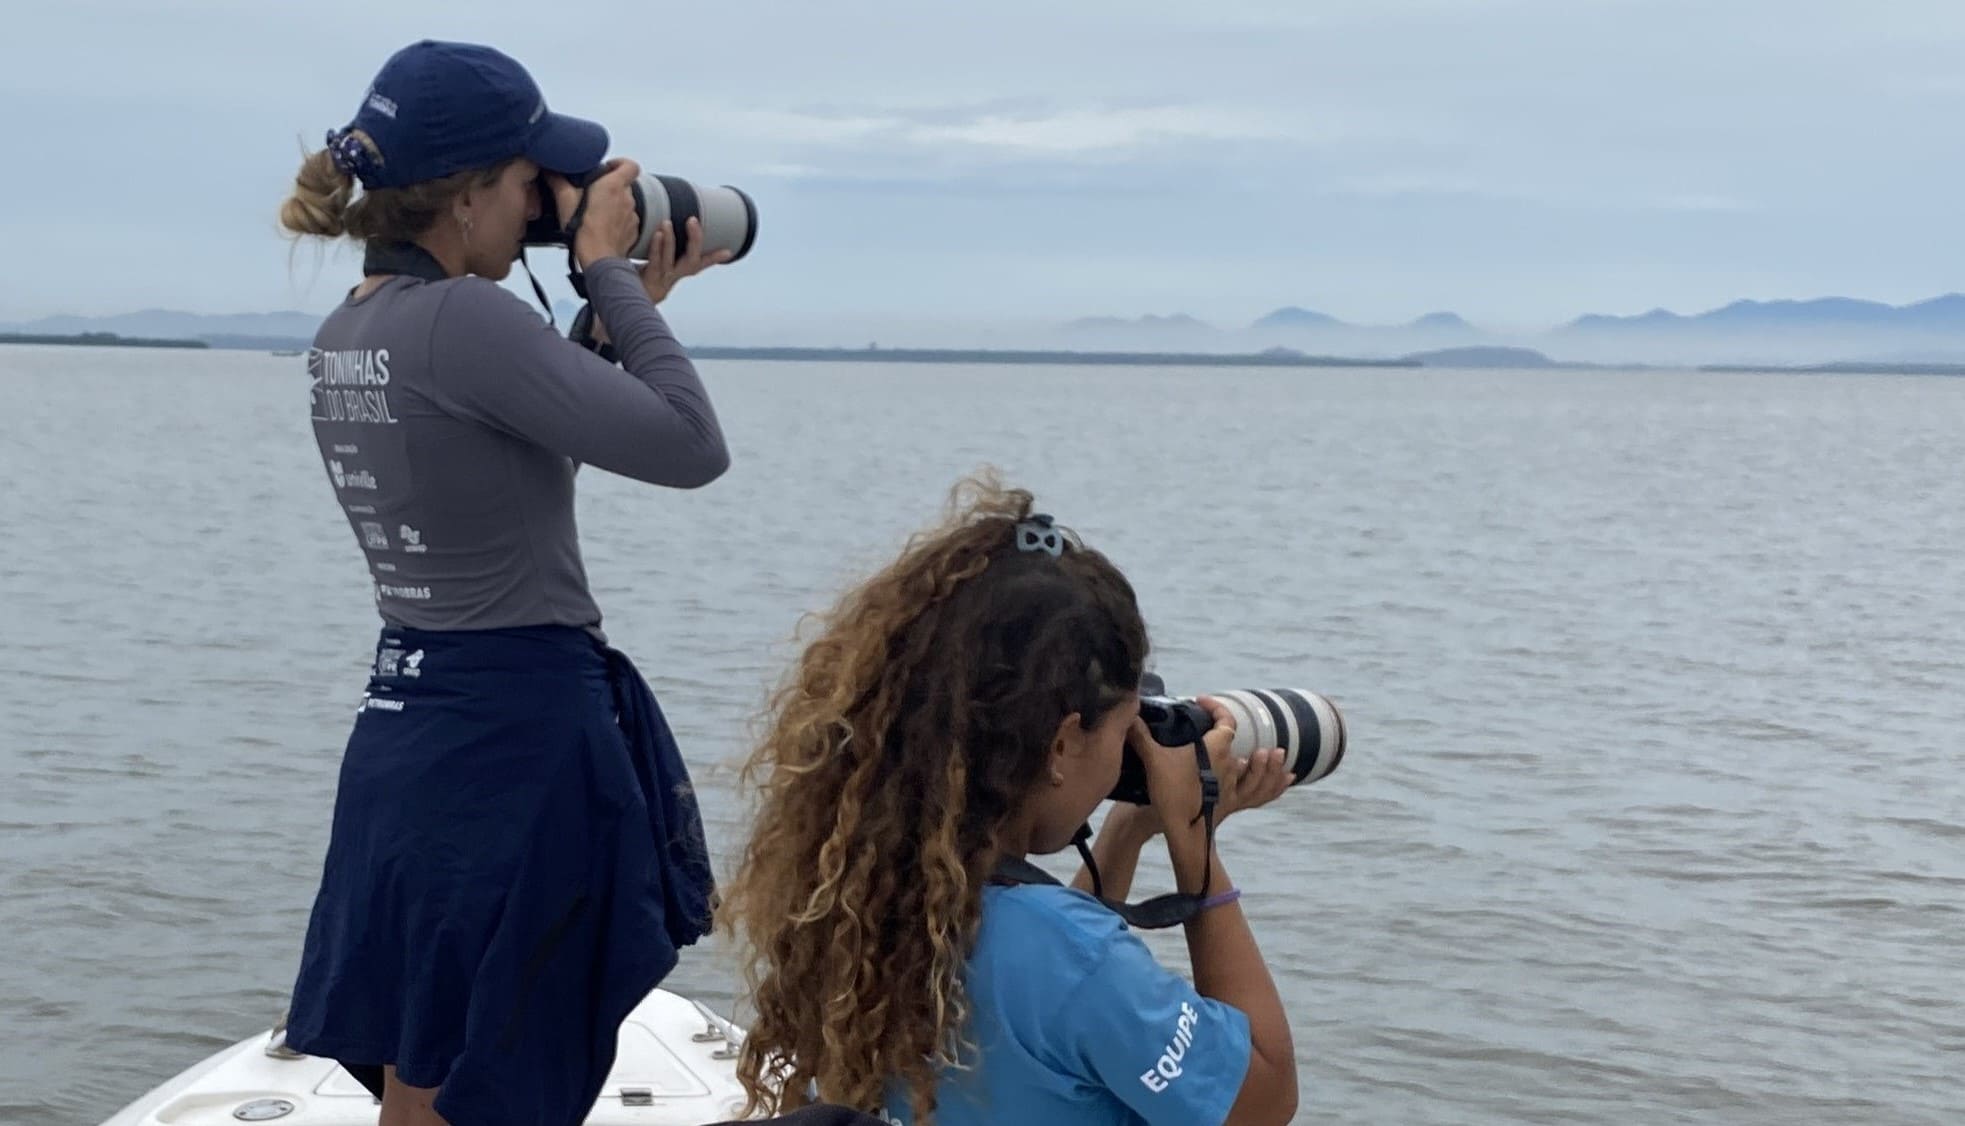 Duas pesquisadoras do Toninhas do Brasil empunhando câmeras fotográficas enquanto monitoram as toninhas da Baía Babitonga.